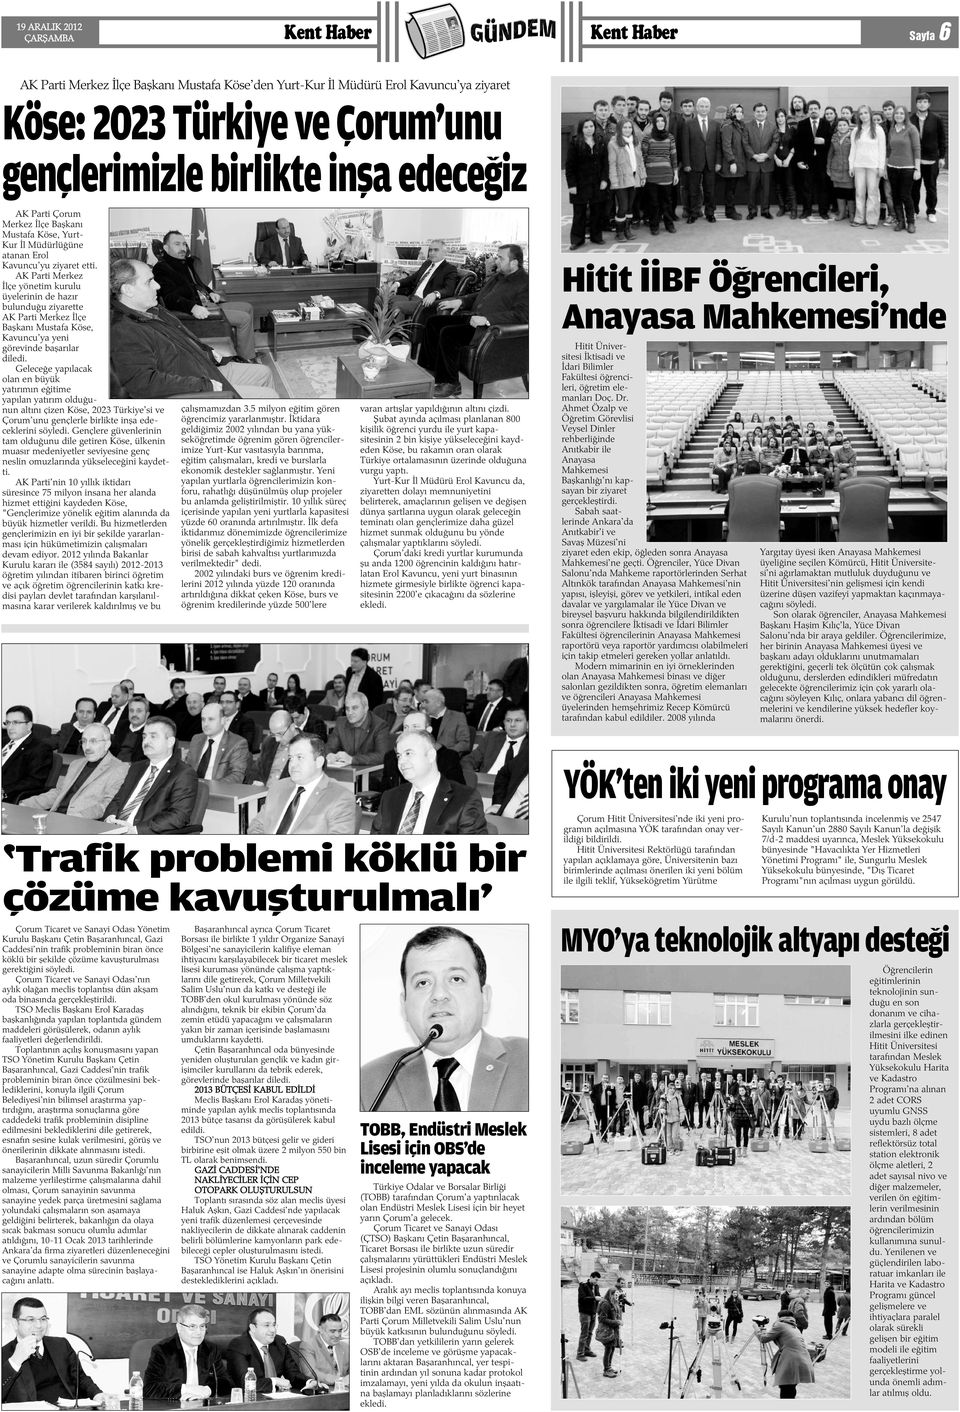 AK Parti Merkez Ýlçe yönetim kurulu üyelerinin de hazýr bulunduðu ziyarette AK Parti Merkez Ýlçe Baþkaný Mustafa Köse, Kavuncu'ya yeni görevinde baþarýlar diledi.